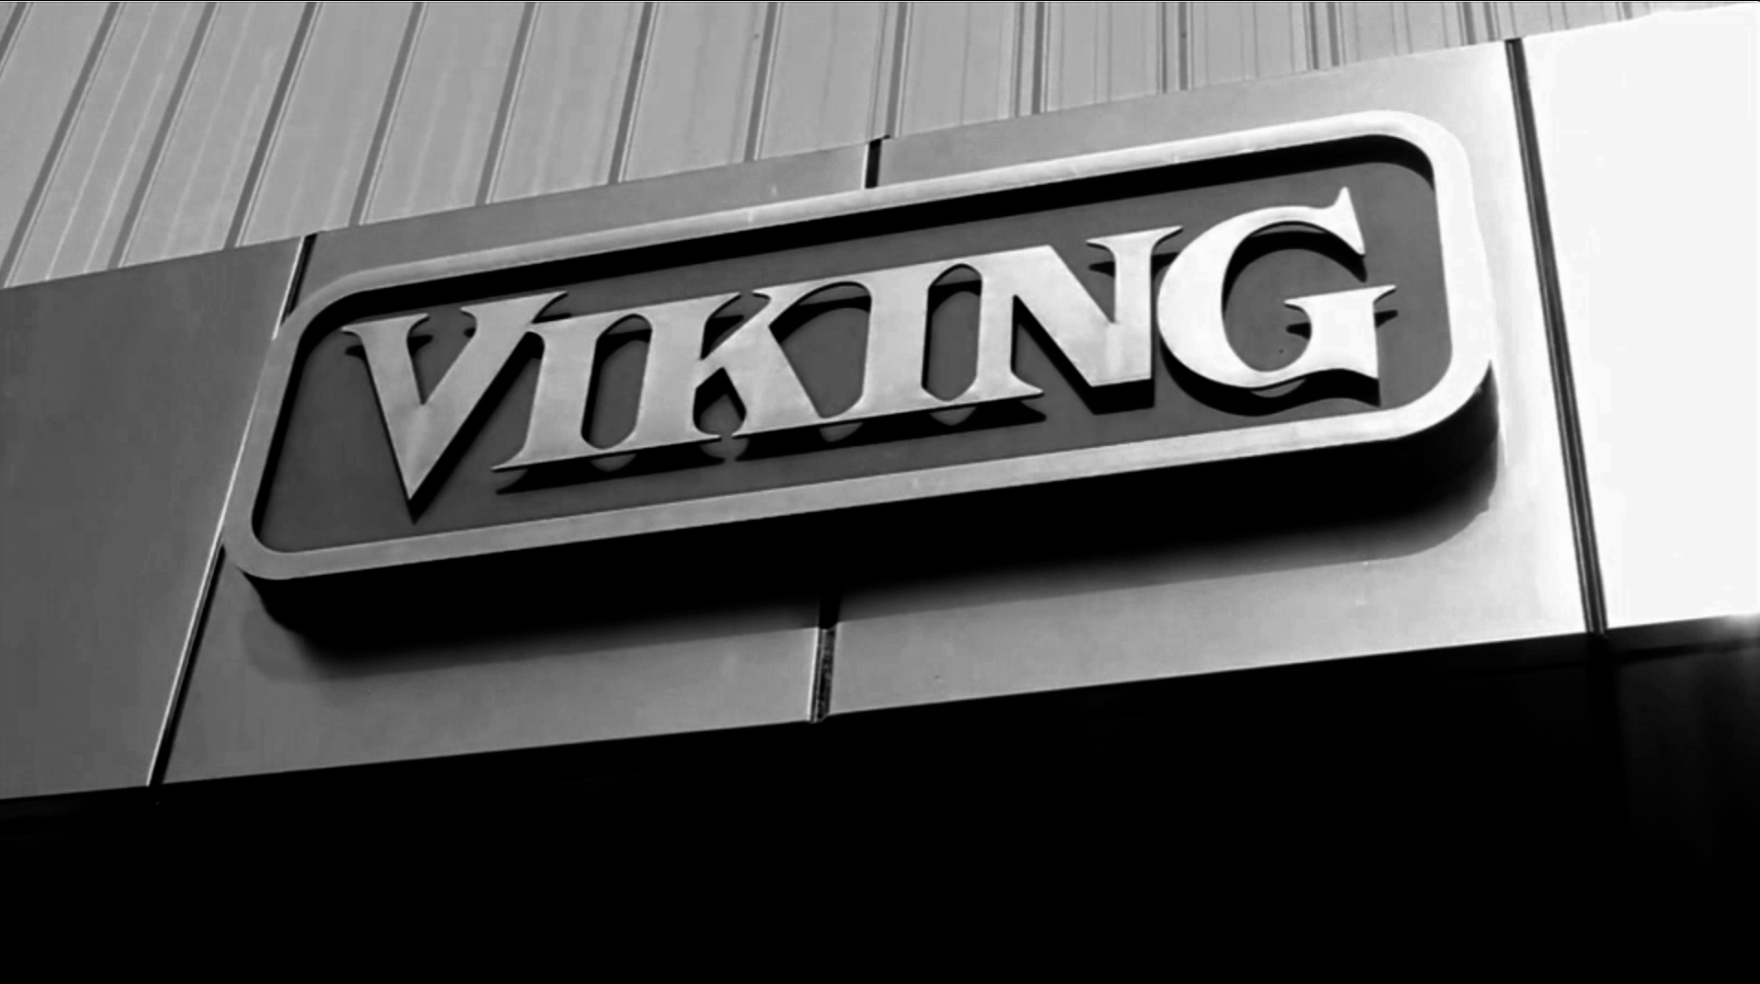 40 Years of Viking Pride